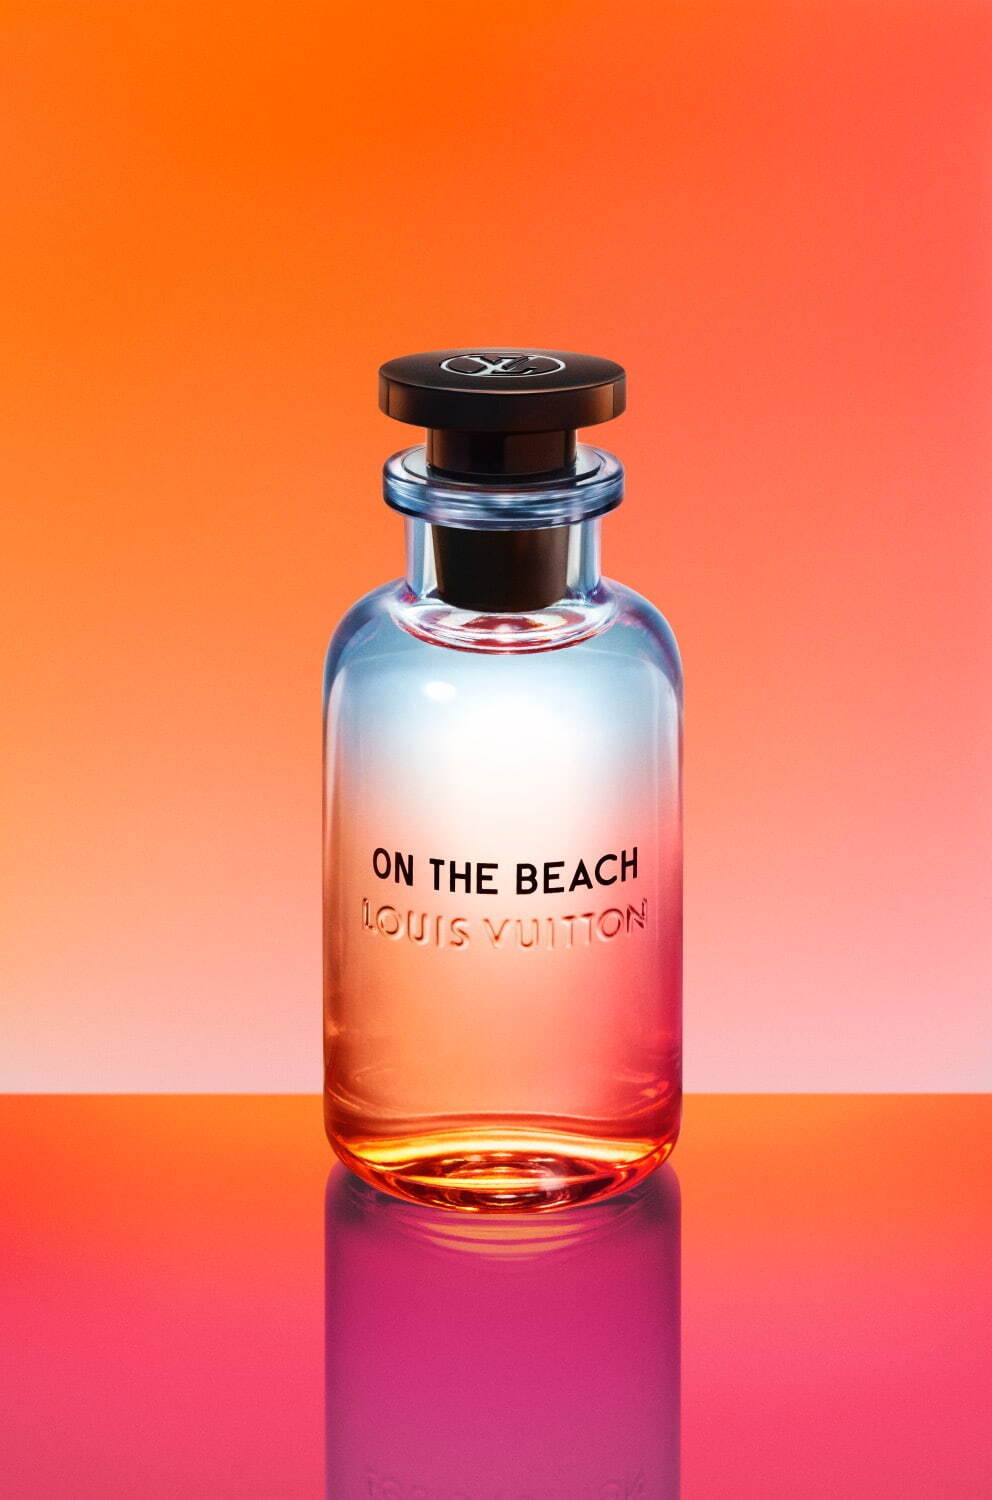 ルイヴィトン 香水 オンザビーチユニセックス - 香水(ユニセックス)